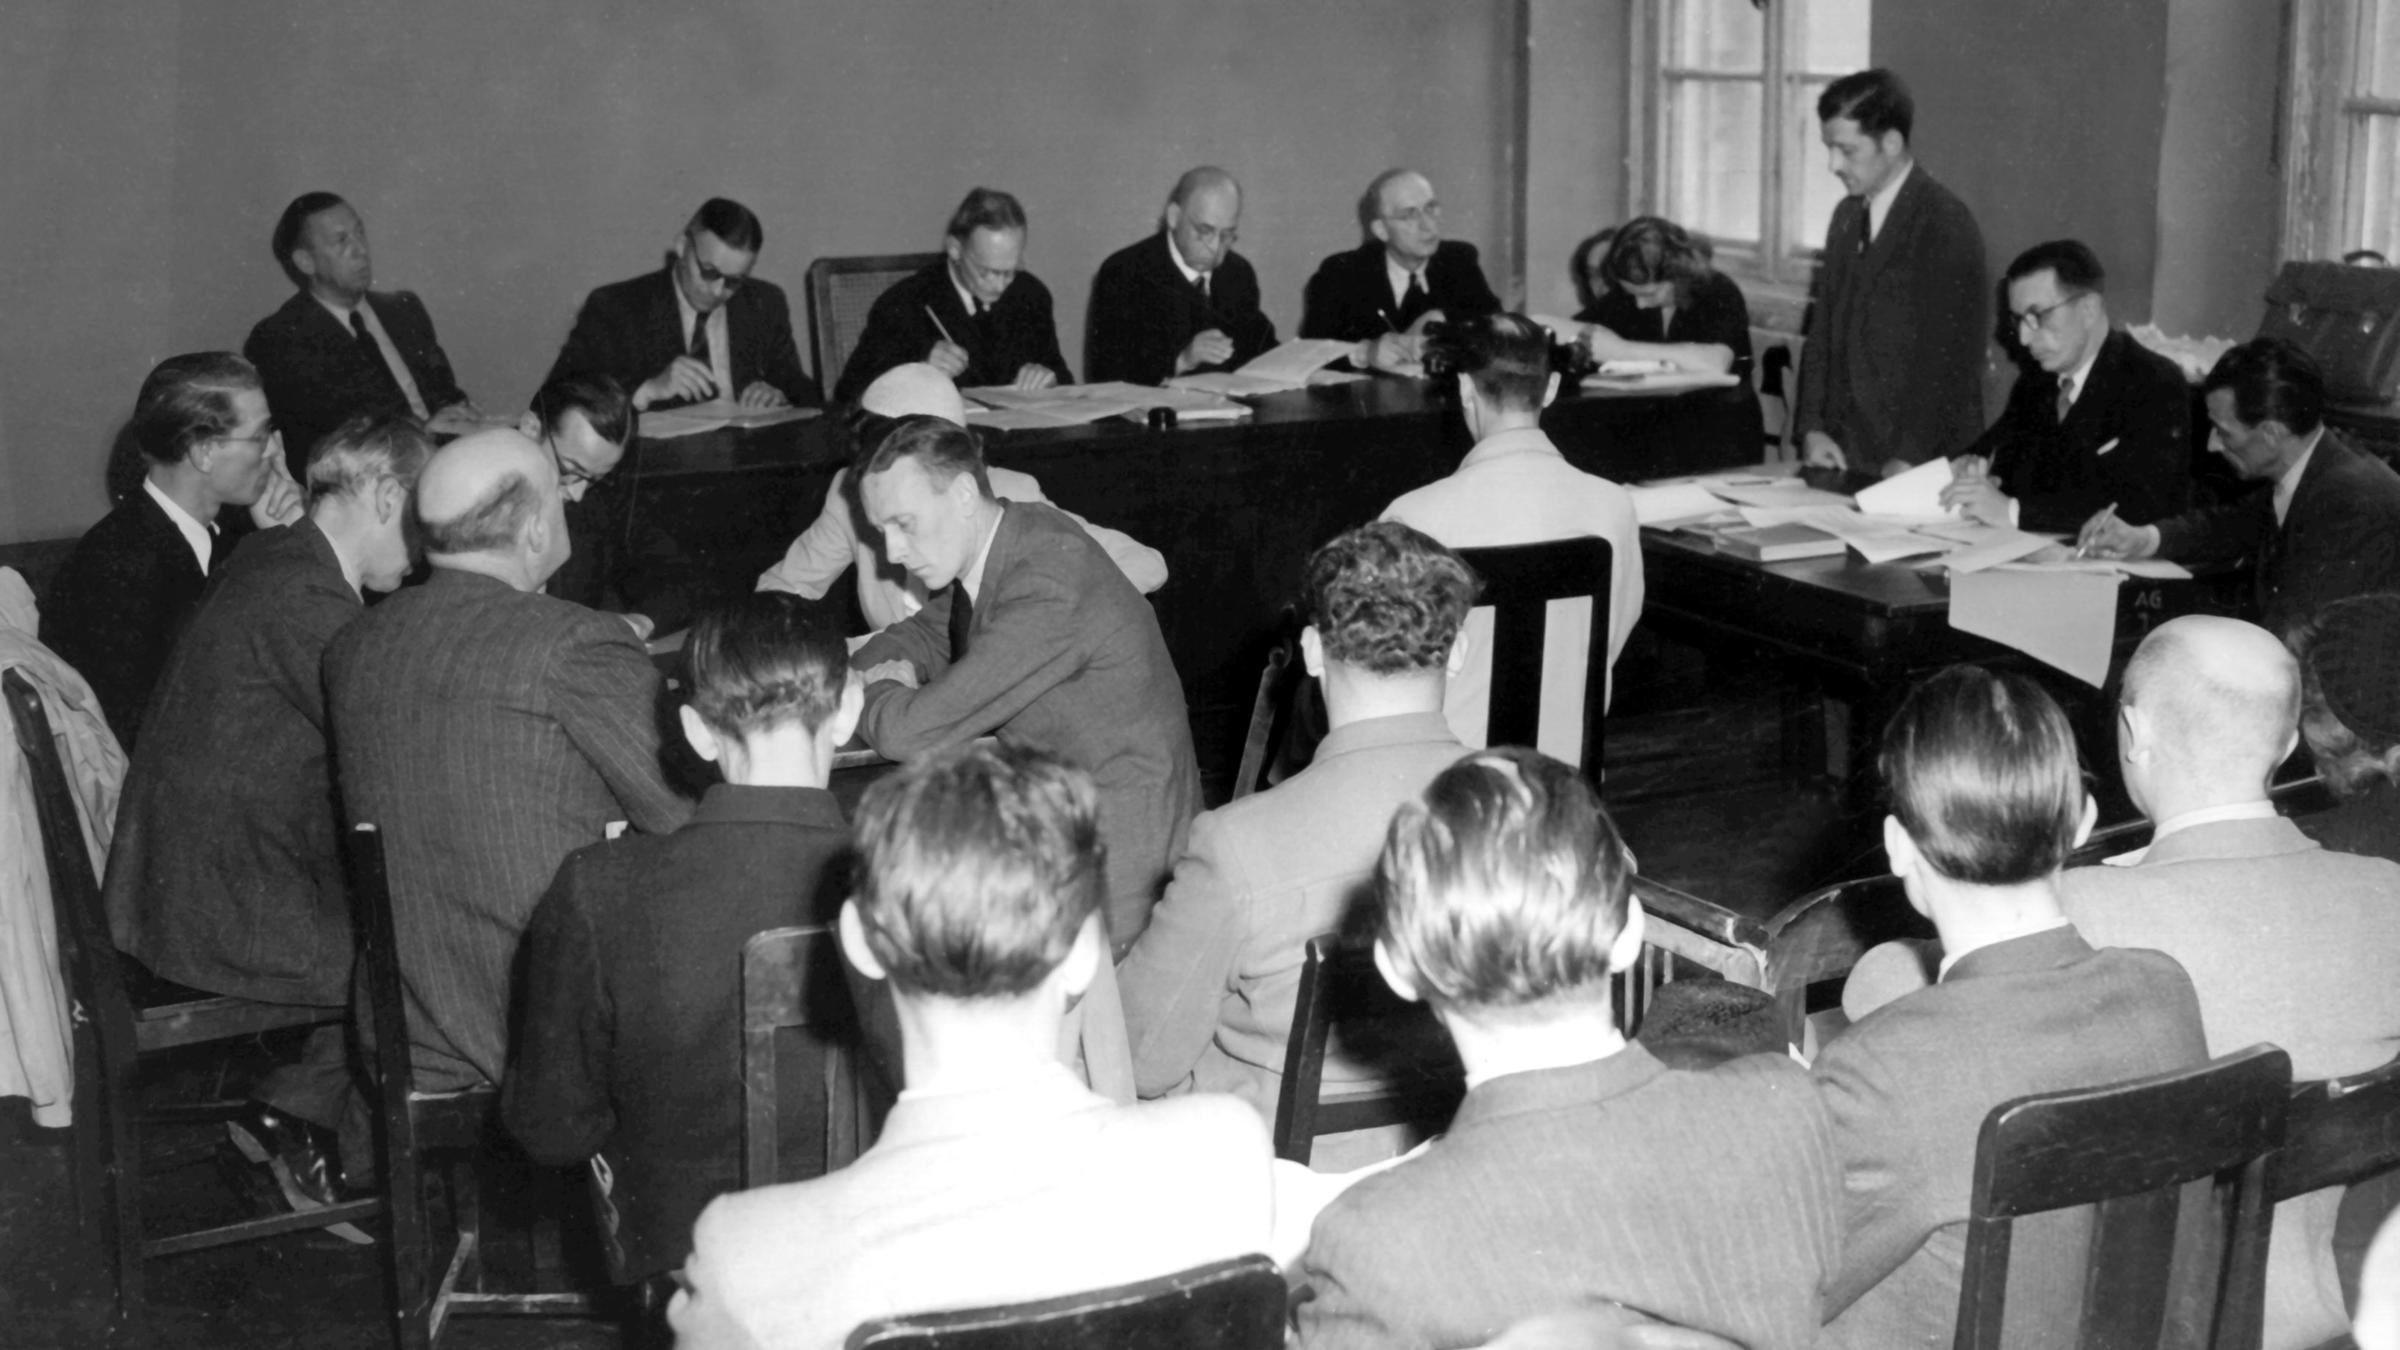 Im Gebäude des Amtsgerichts fand am 21. Mai 1946 die Eröffnung der Spruchkammer in Frankfurt am Main statt. Rechts stehend der öffentliche Ankläger, Oberregierungsrat Walter Joachim Oppenheimer. Die Einrichtung der deutschen Spruchkammern hatte die Entnazifizierung zum Ziel.